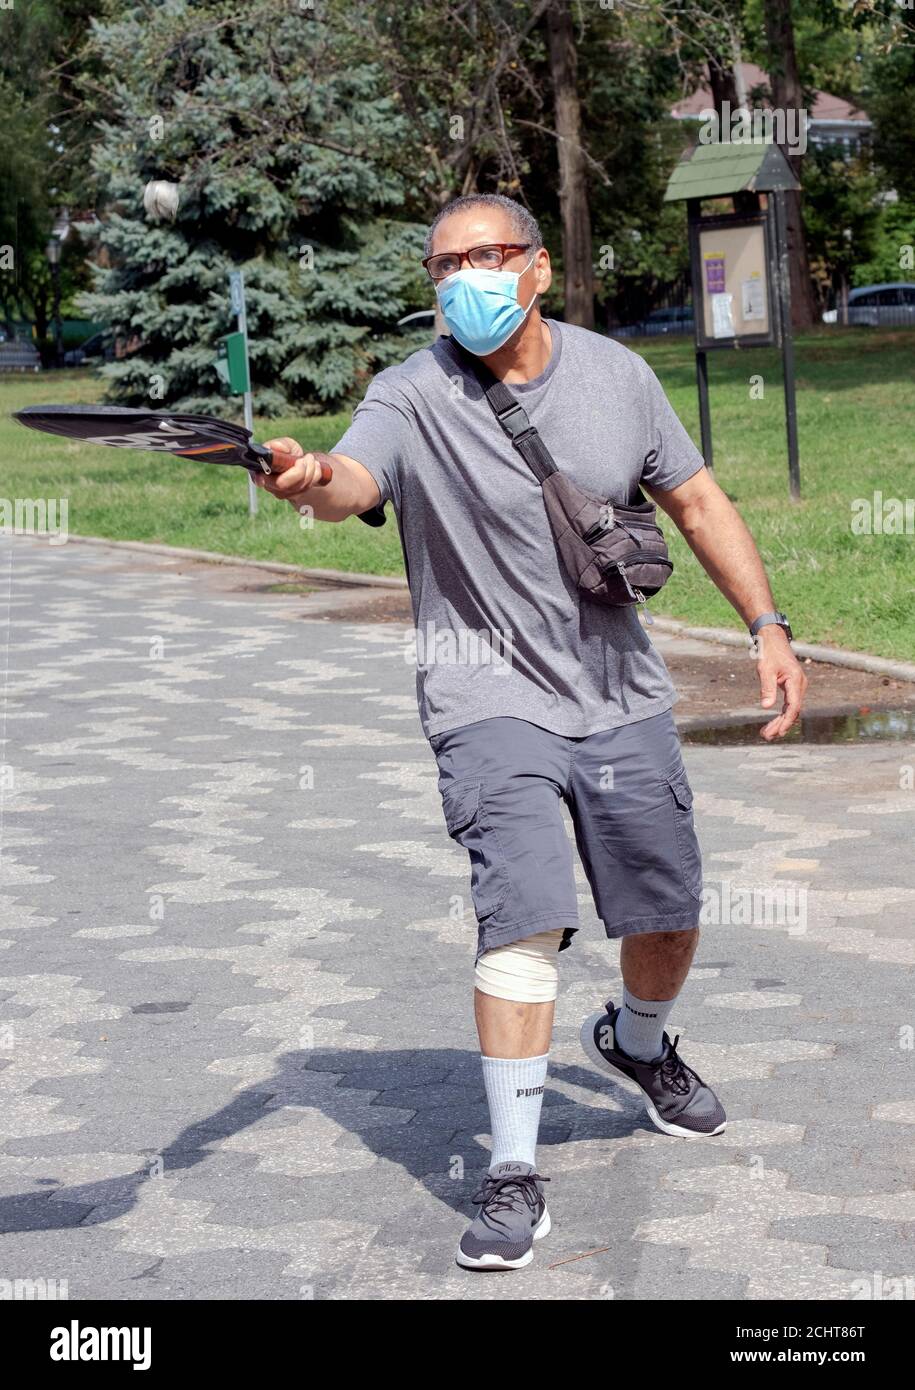 Un homme marche dans le parc tout en rebondissant une balle de son raquet de tennis. À Kissena Park, Flushing, New York. Banque D'Images